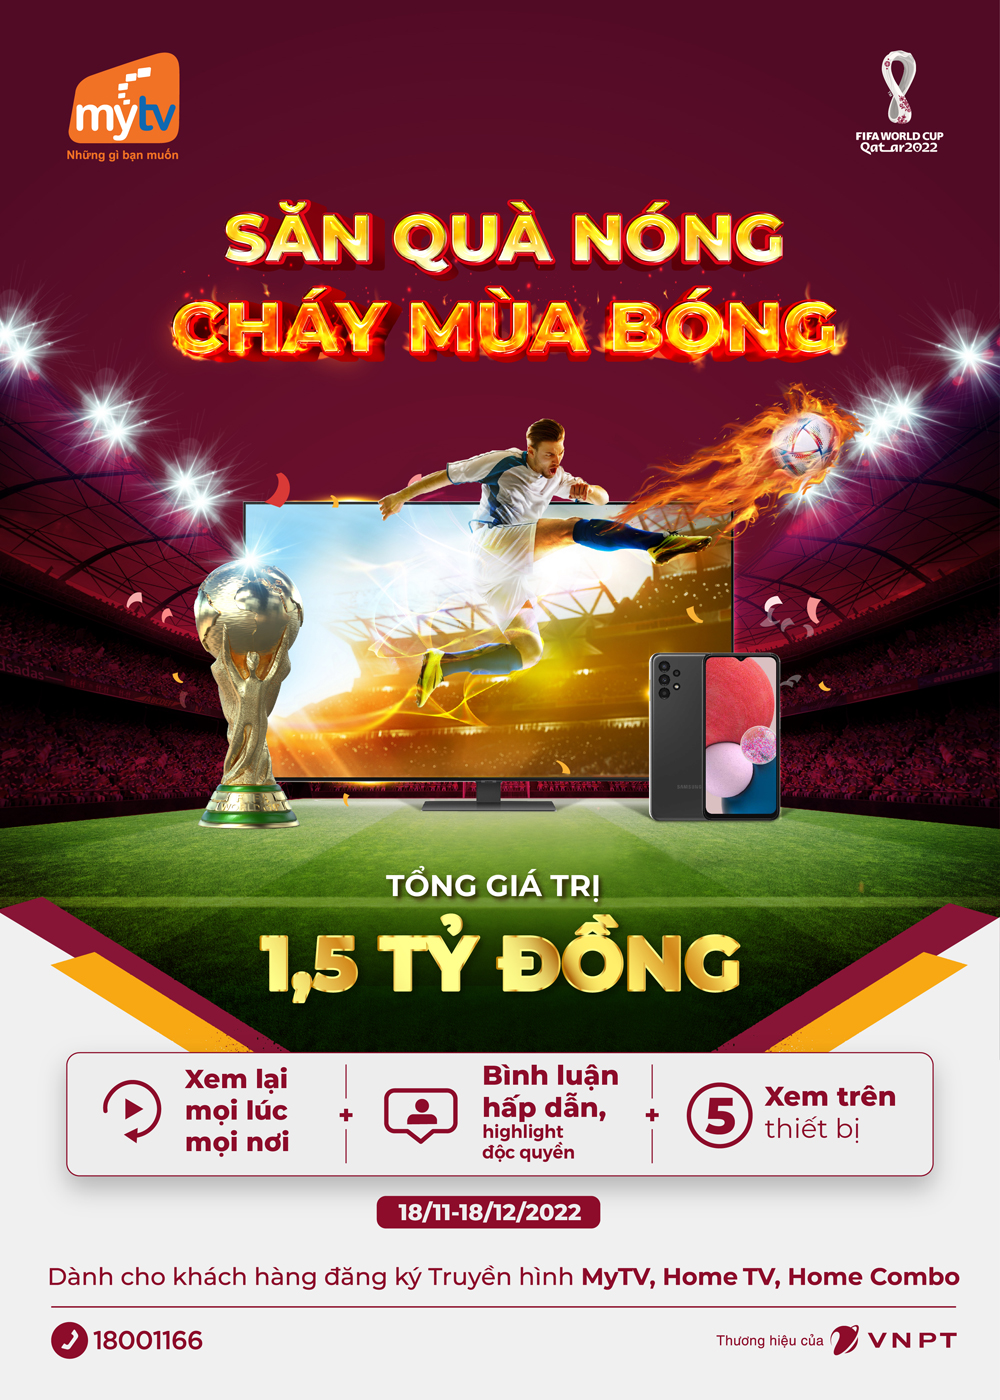 Khởi tranh World Cup 2022, MyTV tung ưu đãi “Săn quà nóng - Cháy mùa bóng” - 1